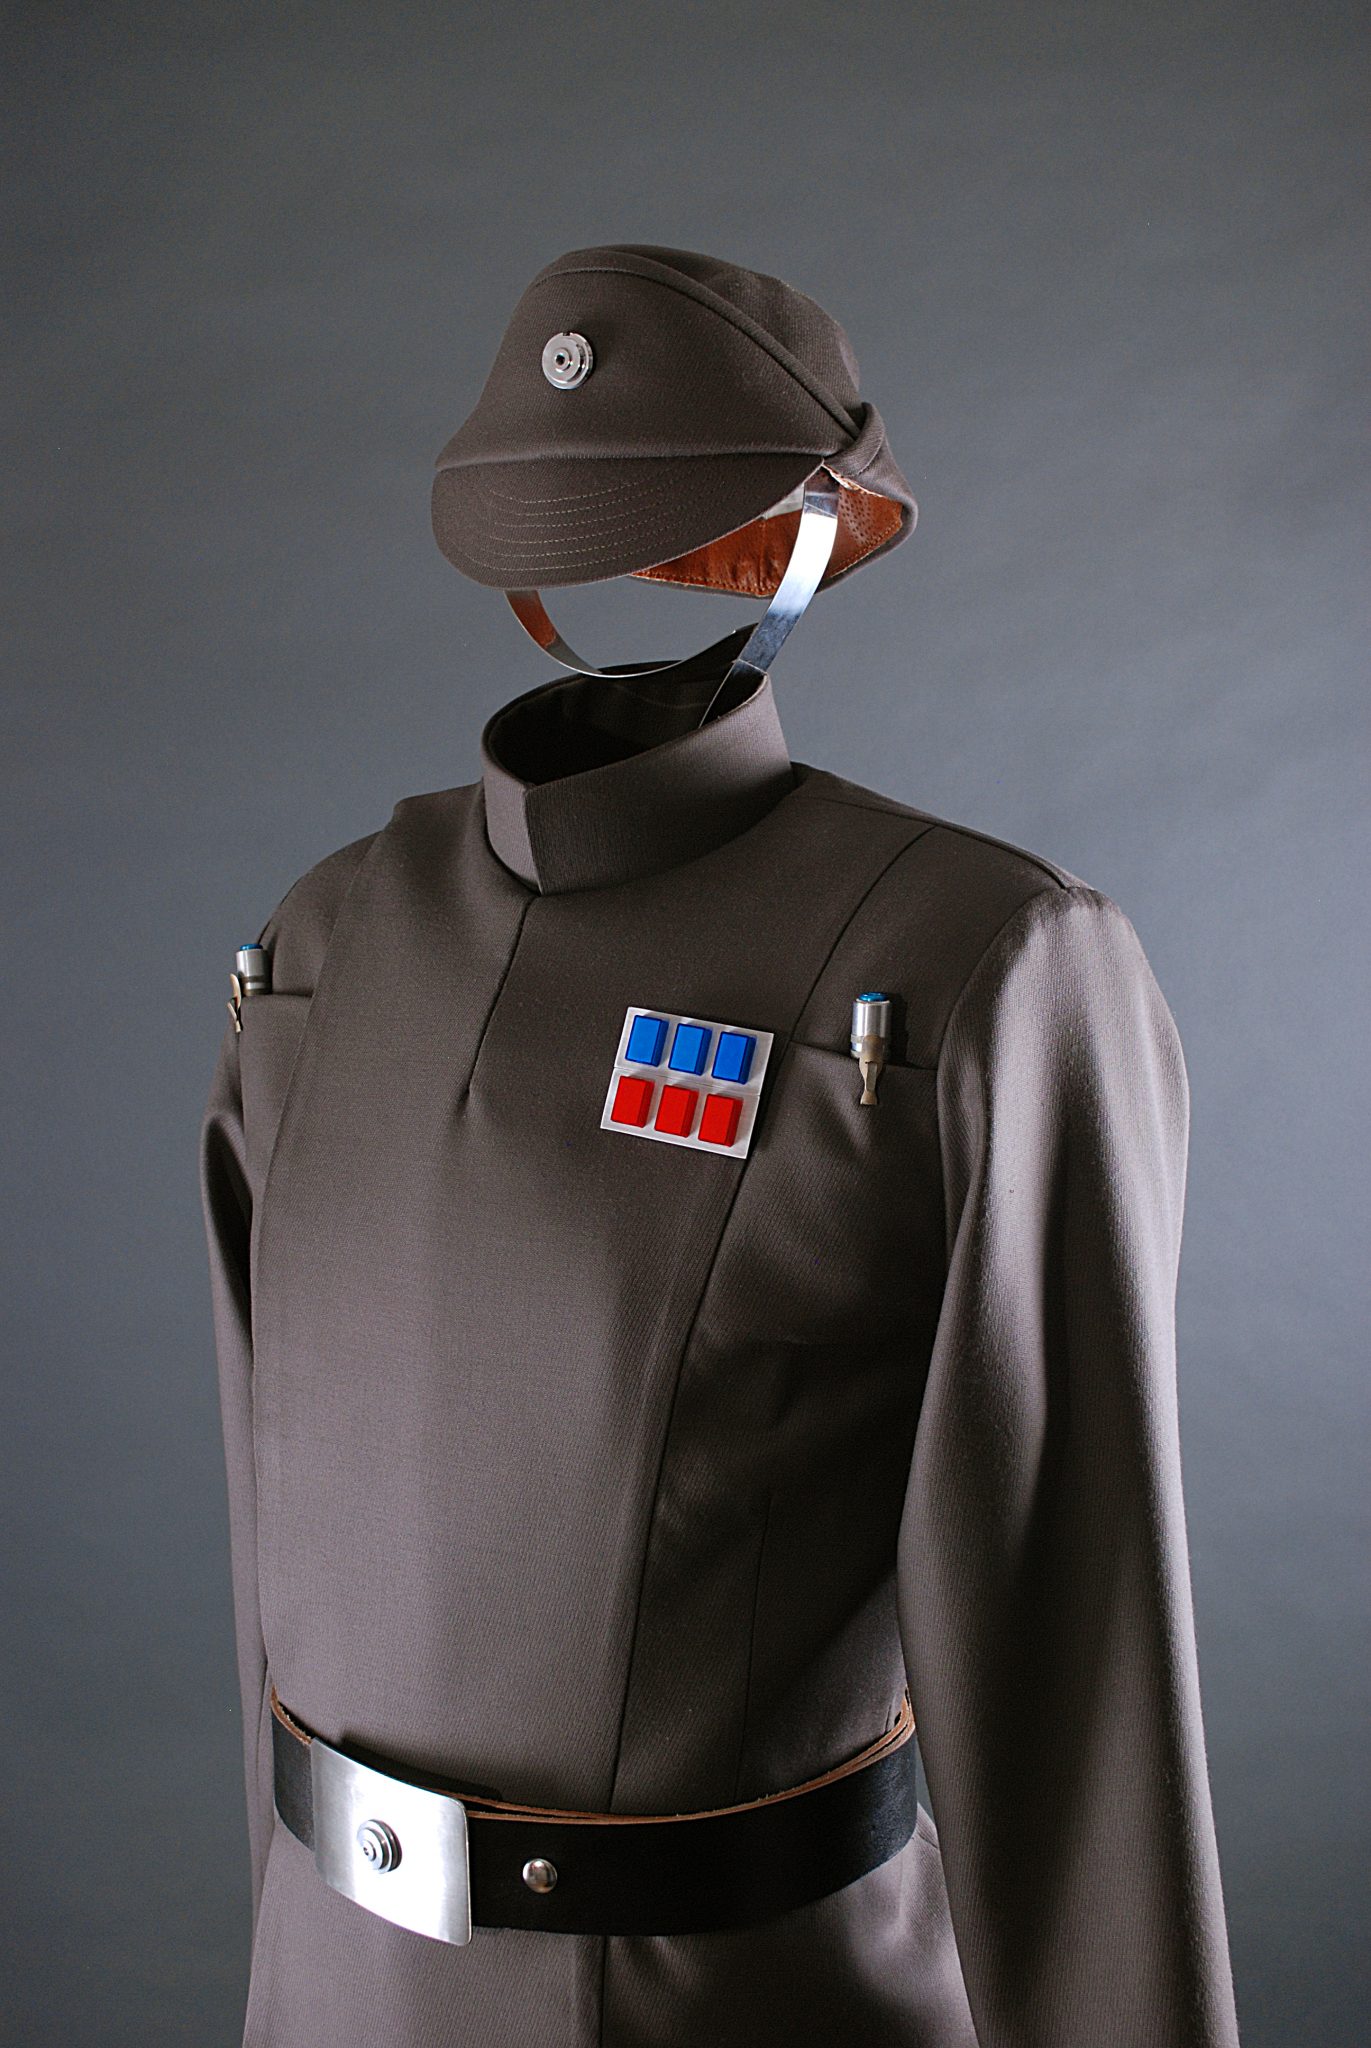 star wars imperial navy officer uniform